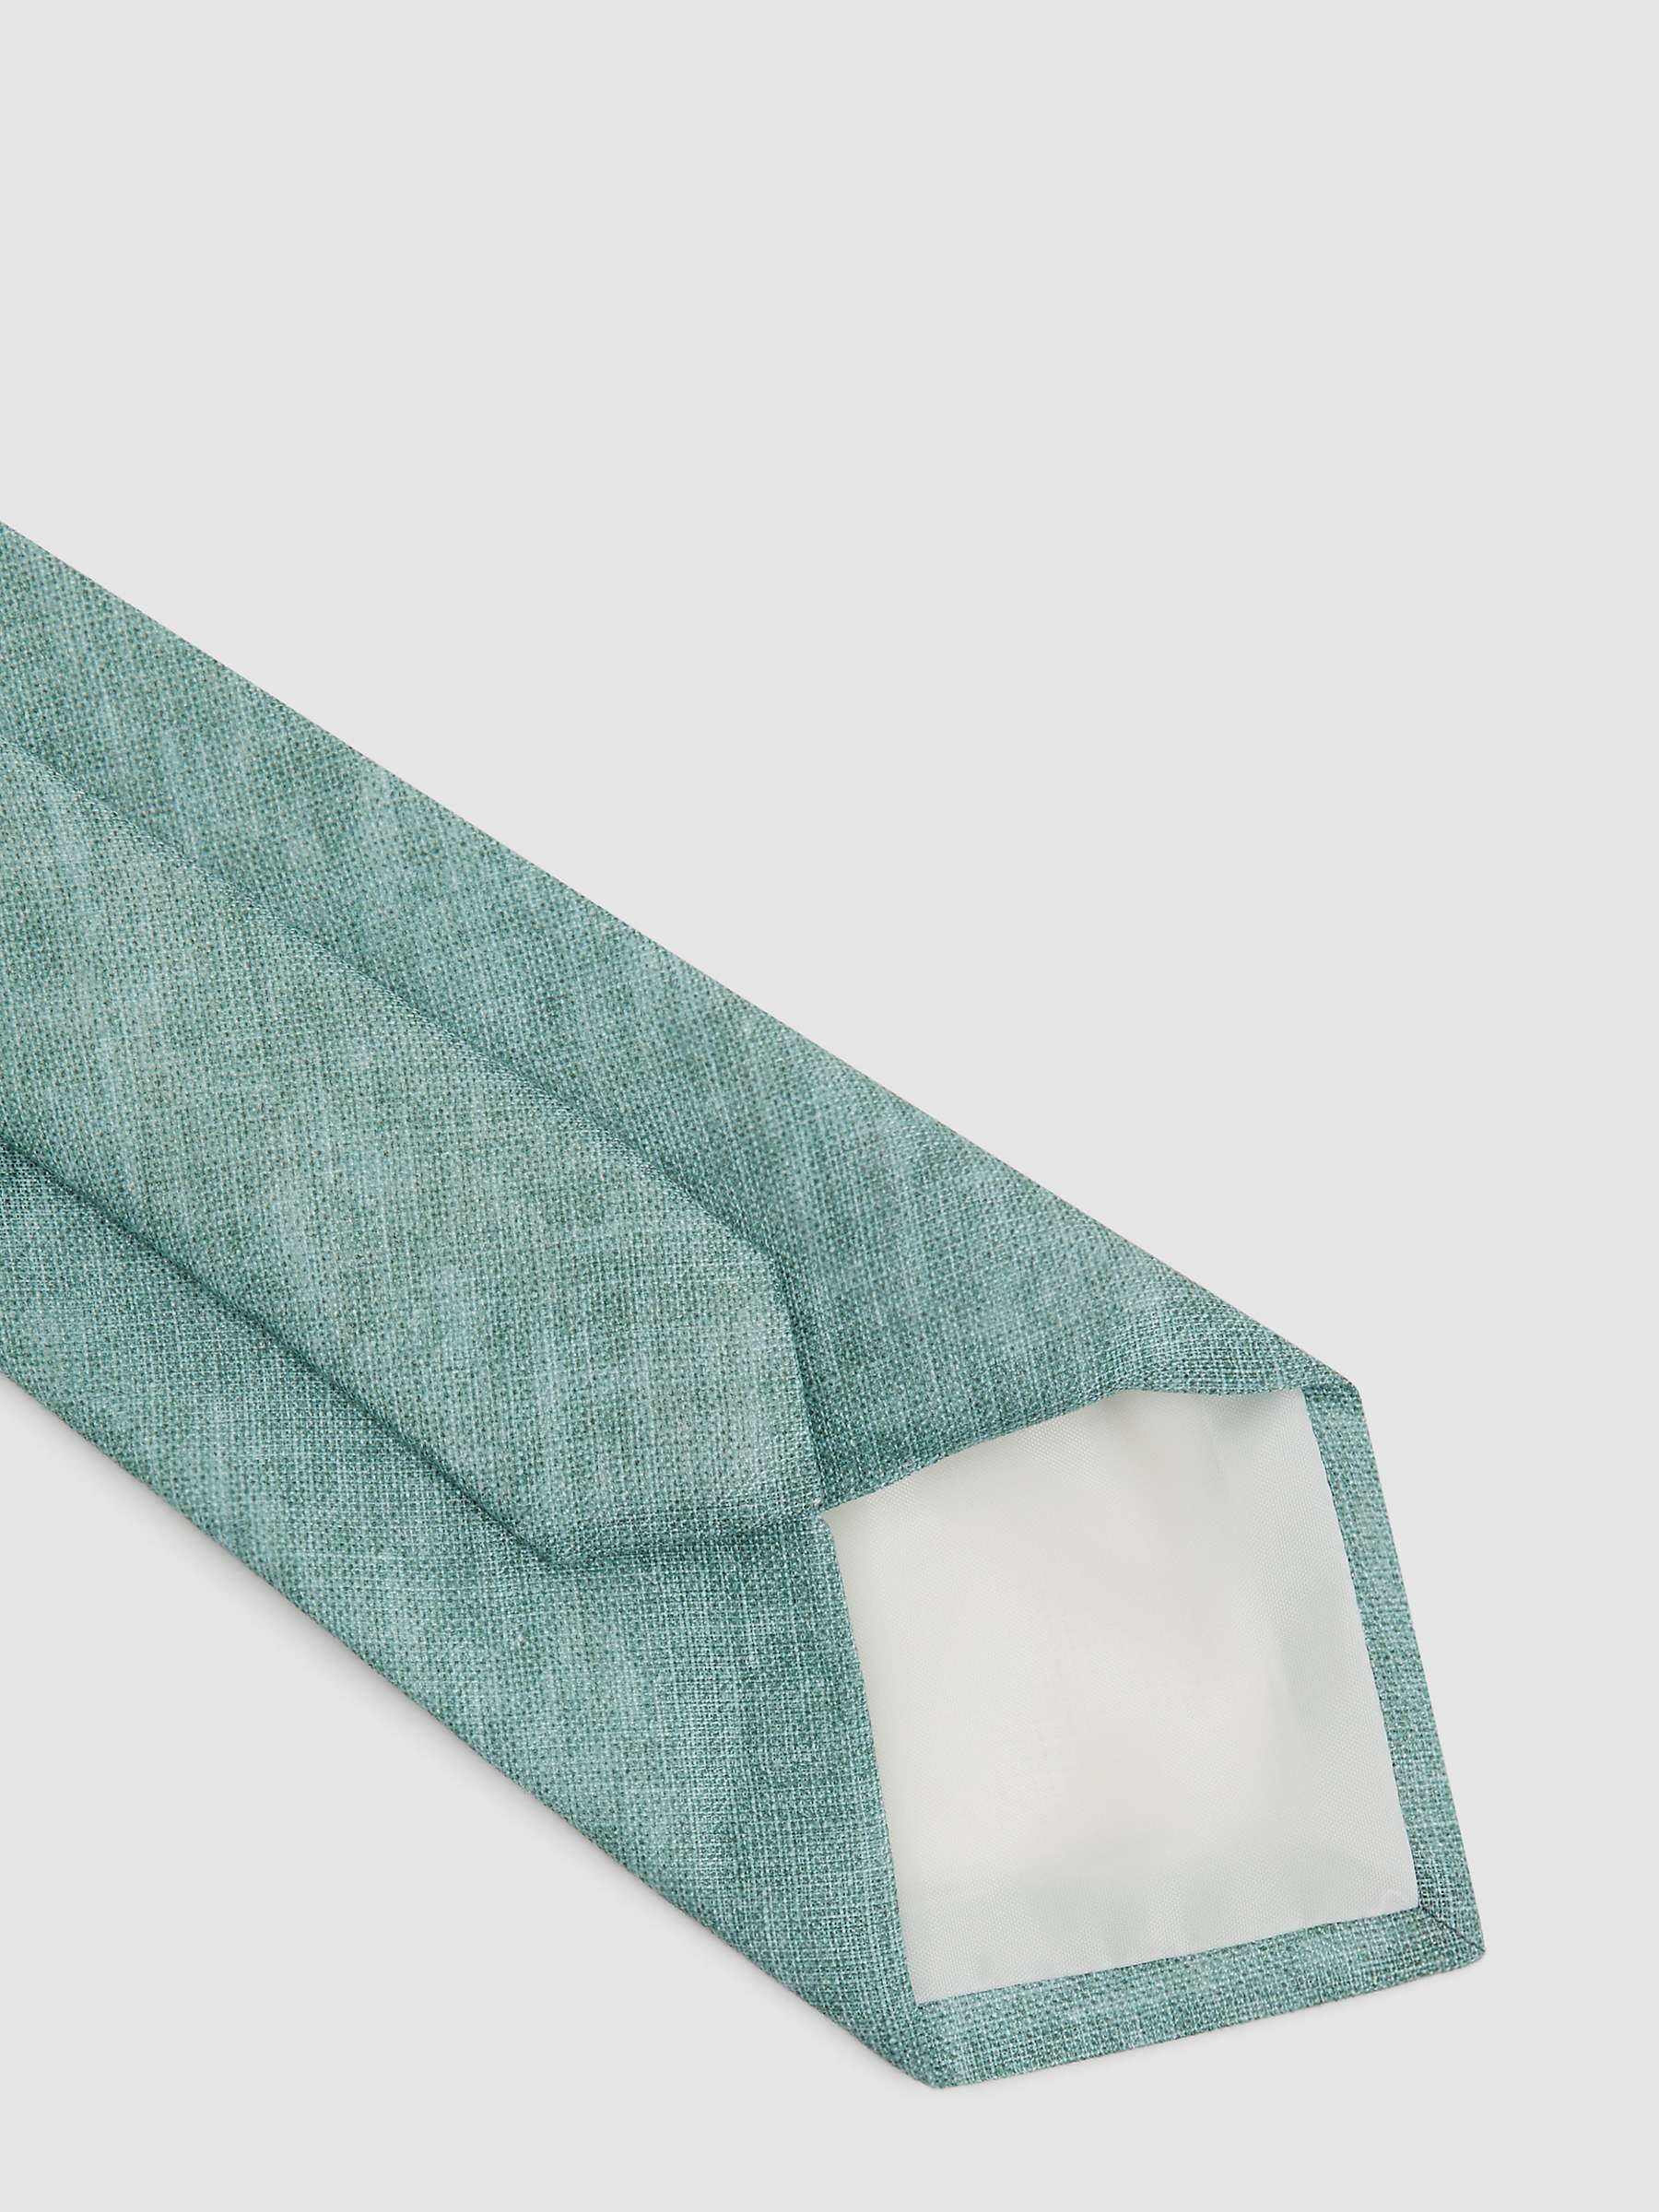 Buy Reiss Vitali Linen Tie, Pistachio Online at johnlewis.com